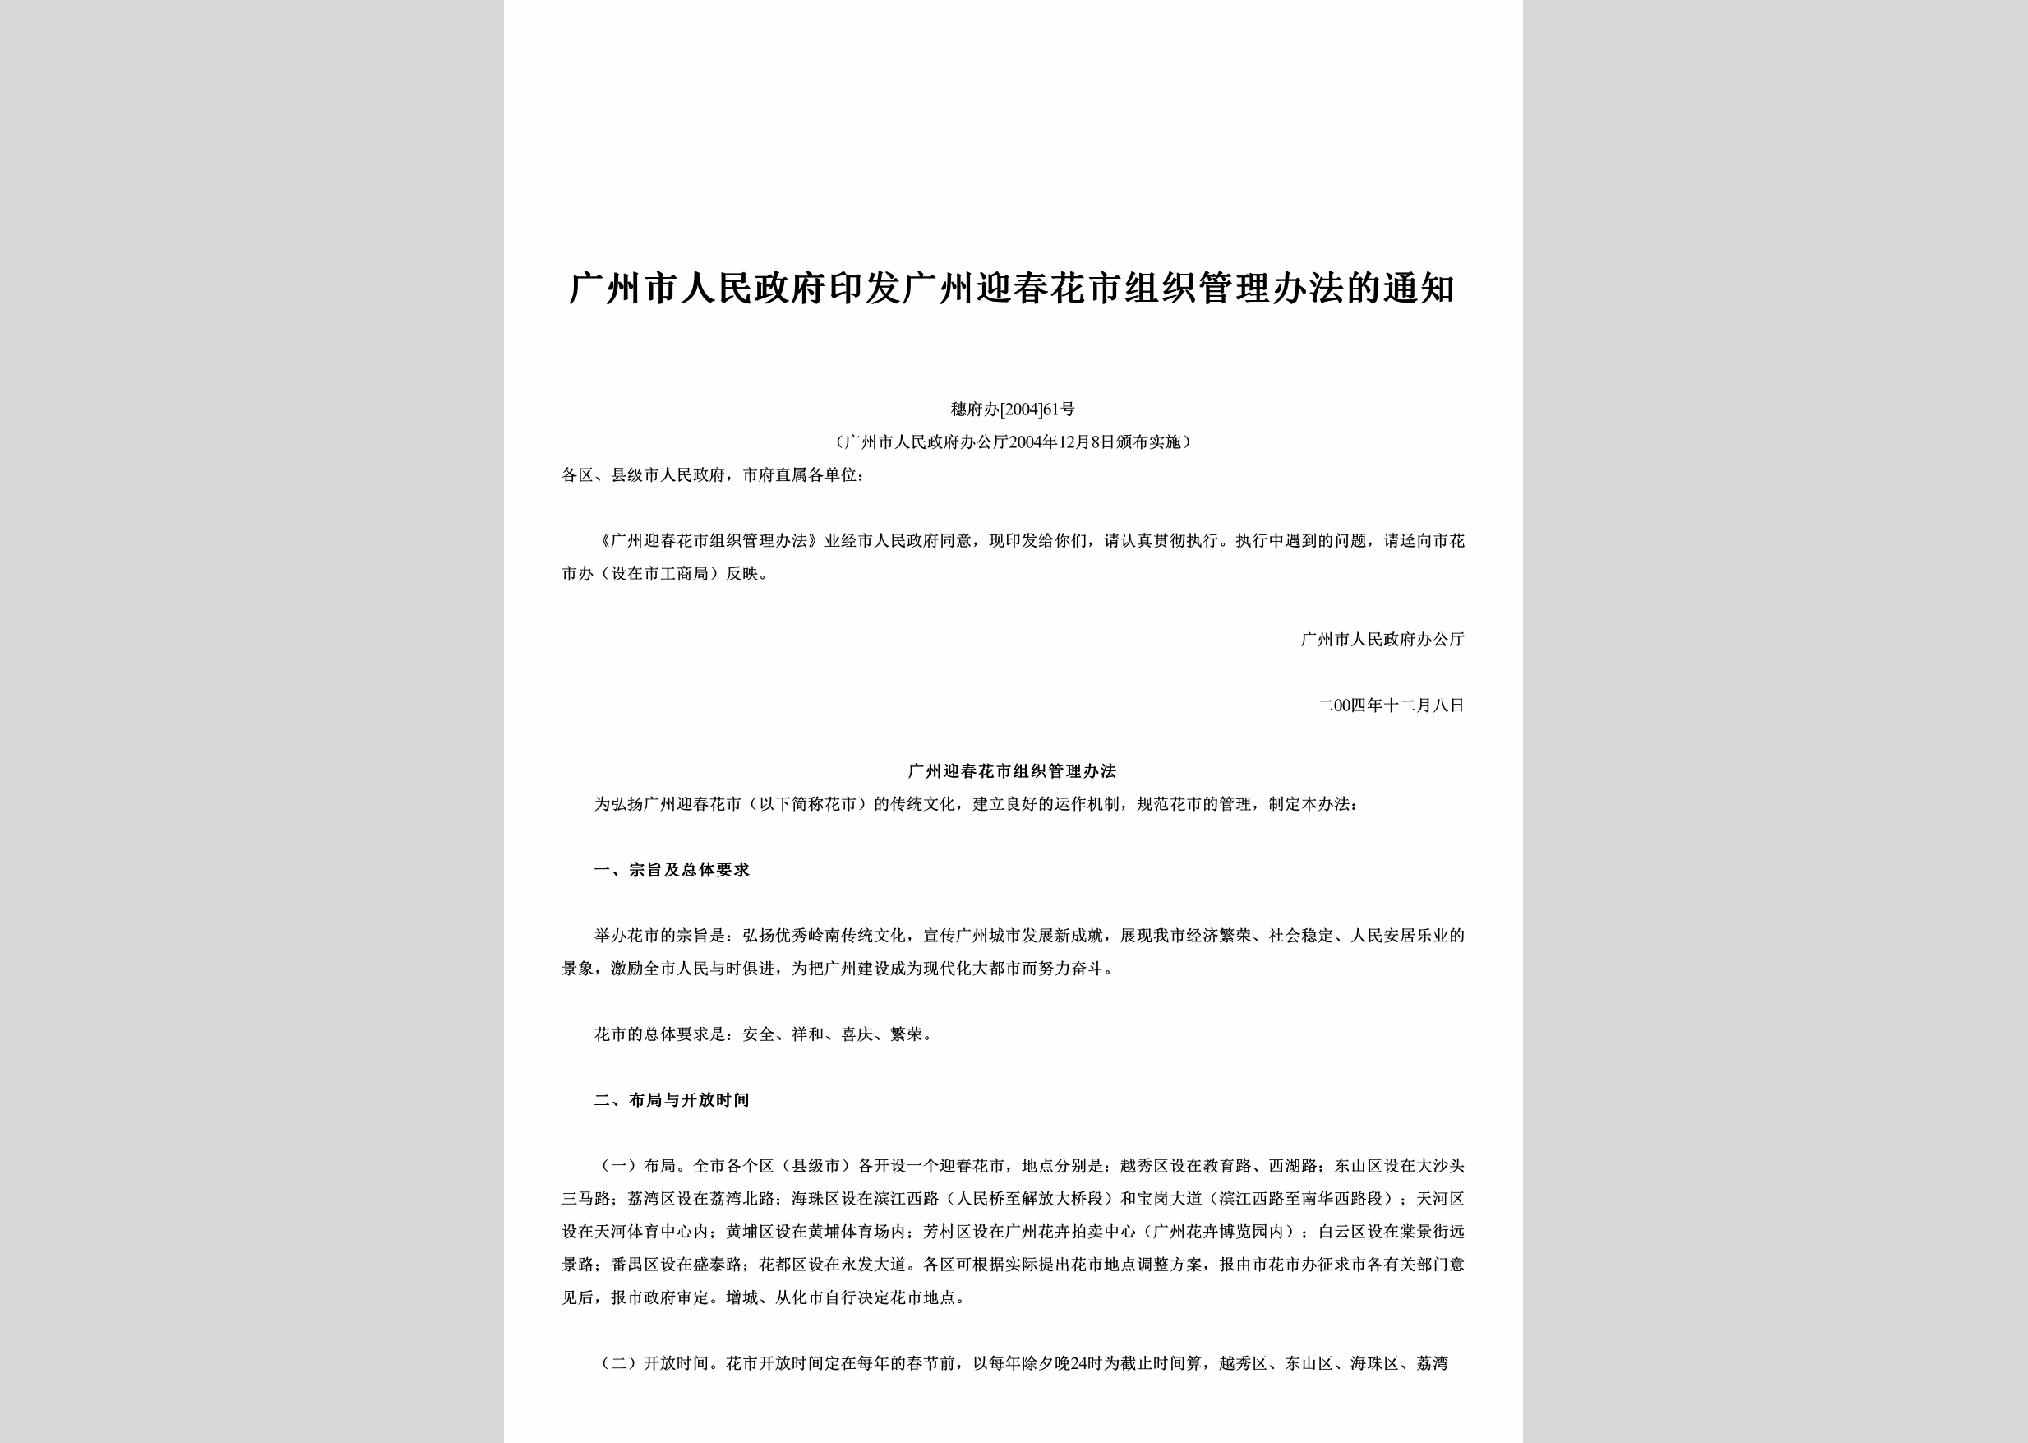 穗府办[2004]61号：印发广州迎春花市组织管理办法的通知